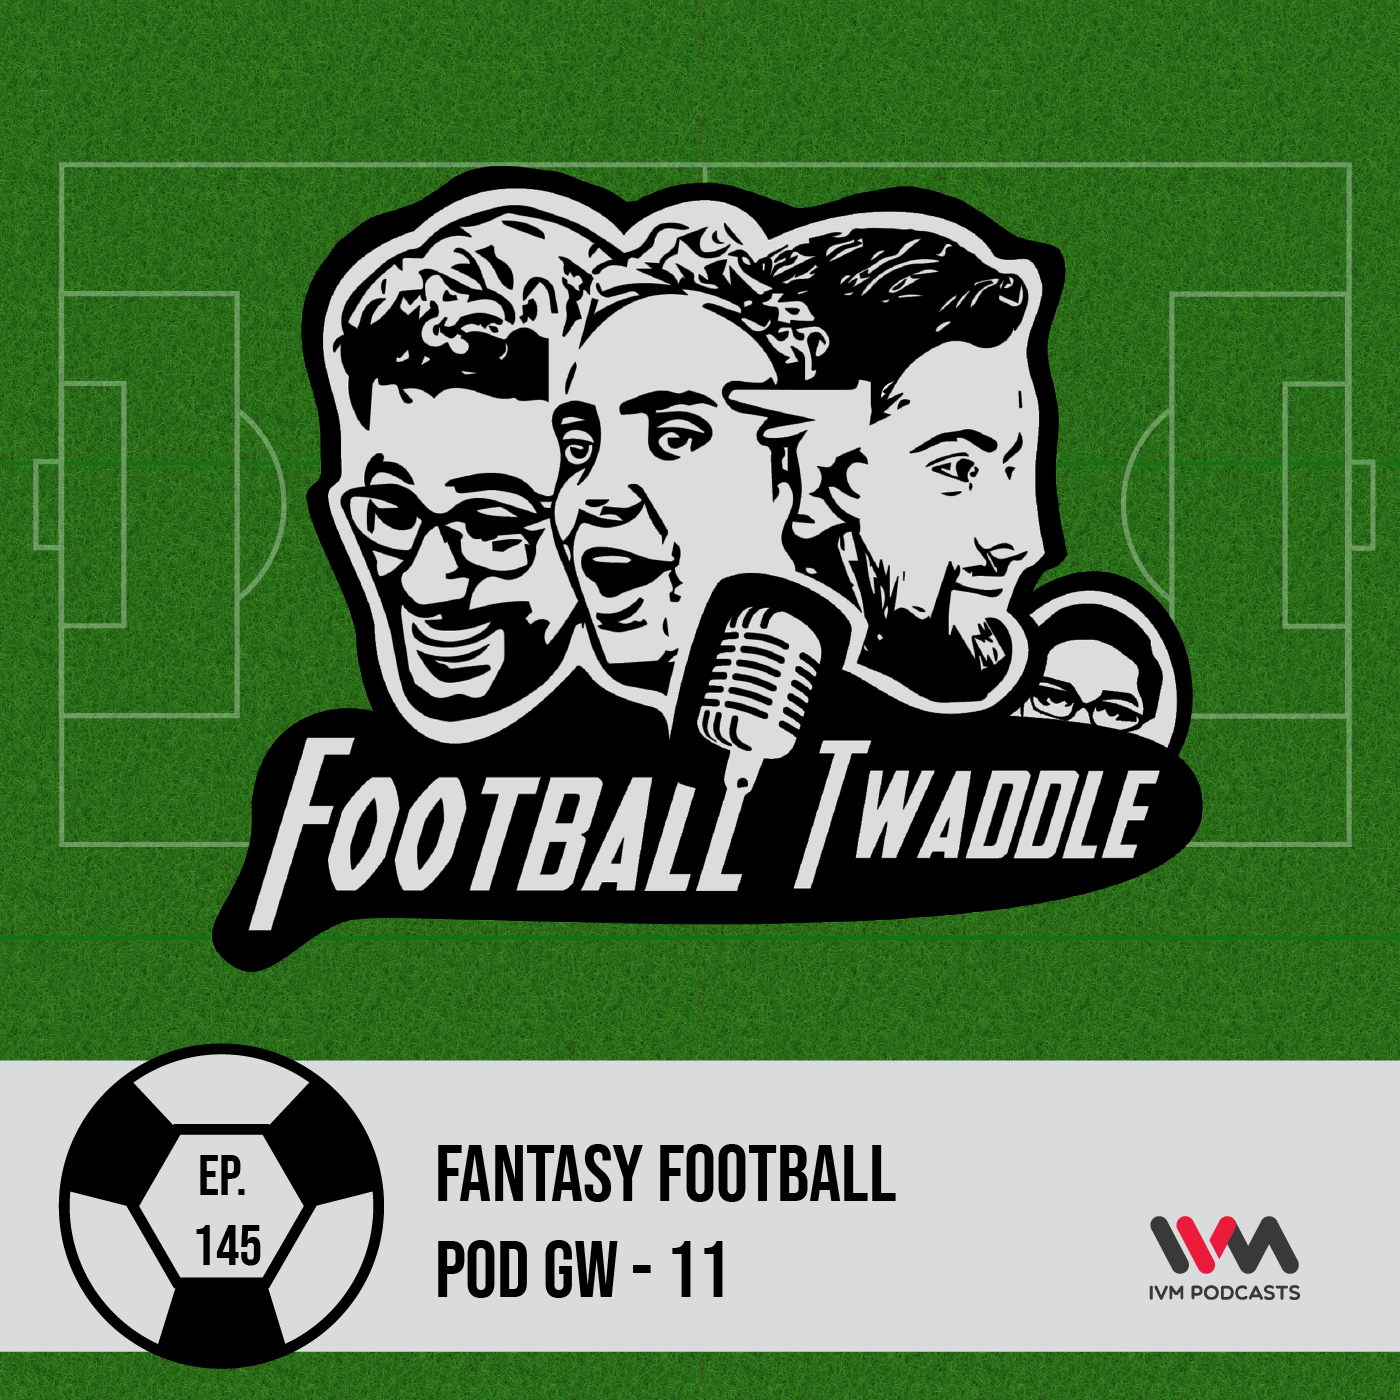 Fantasy Football Pod GW - 11